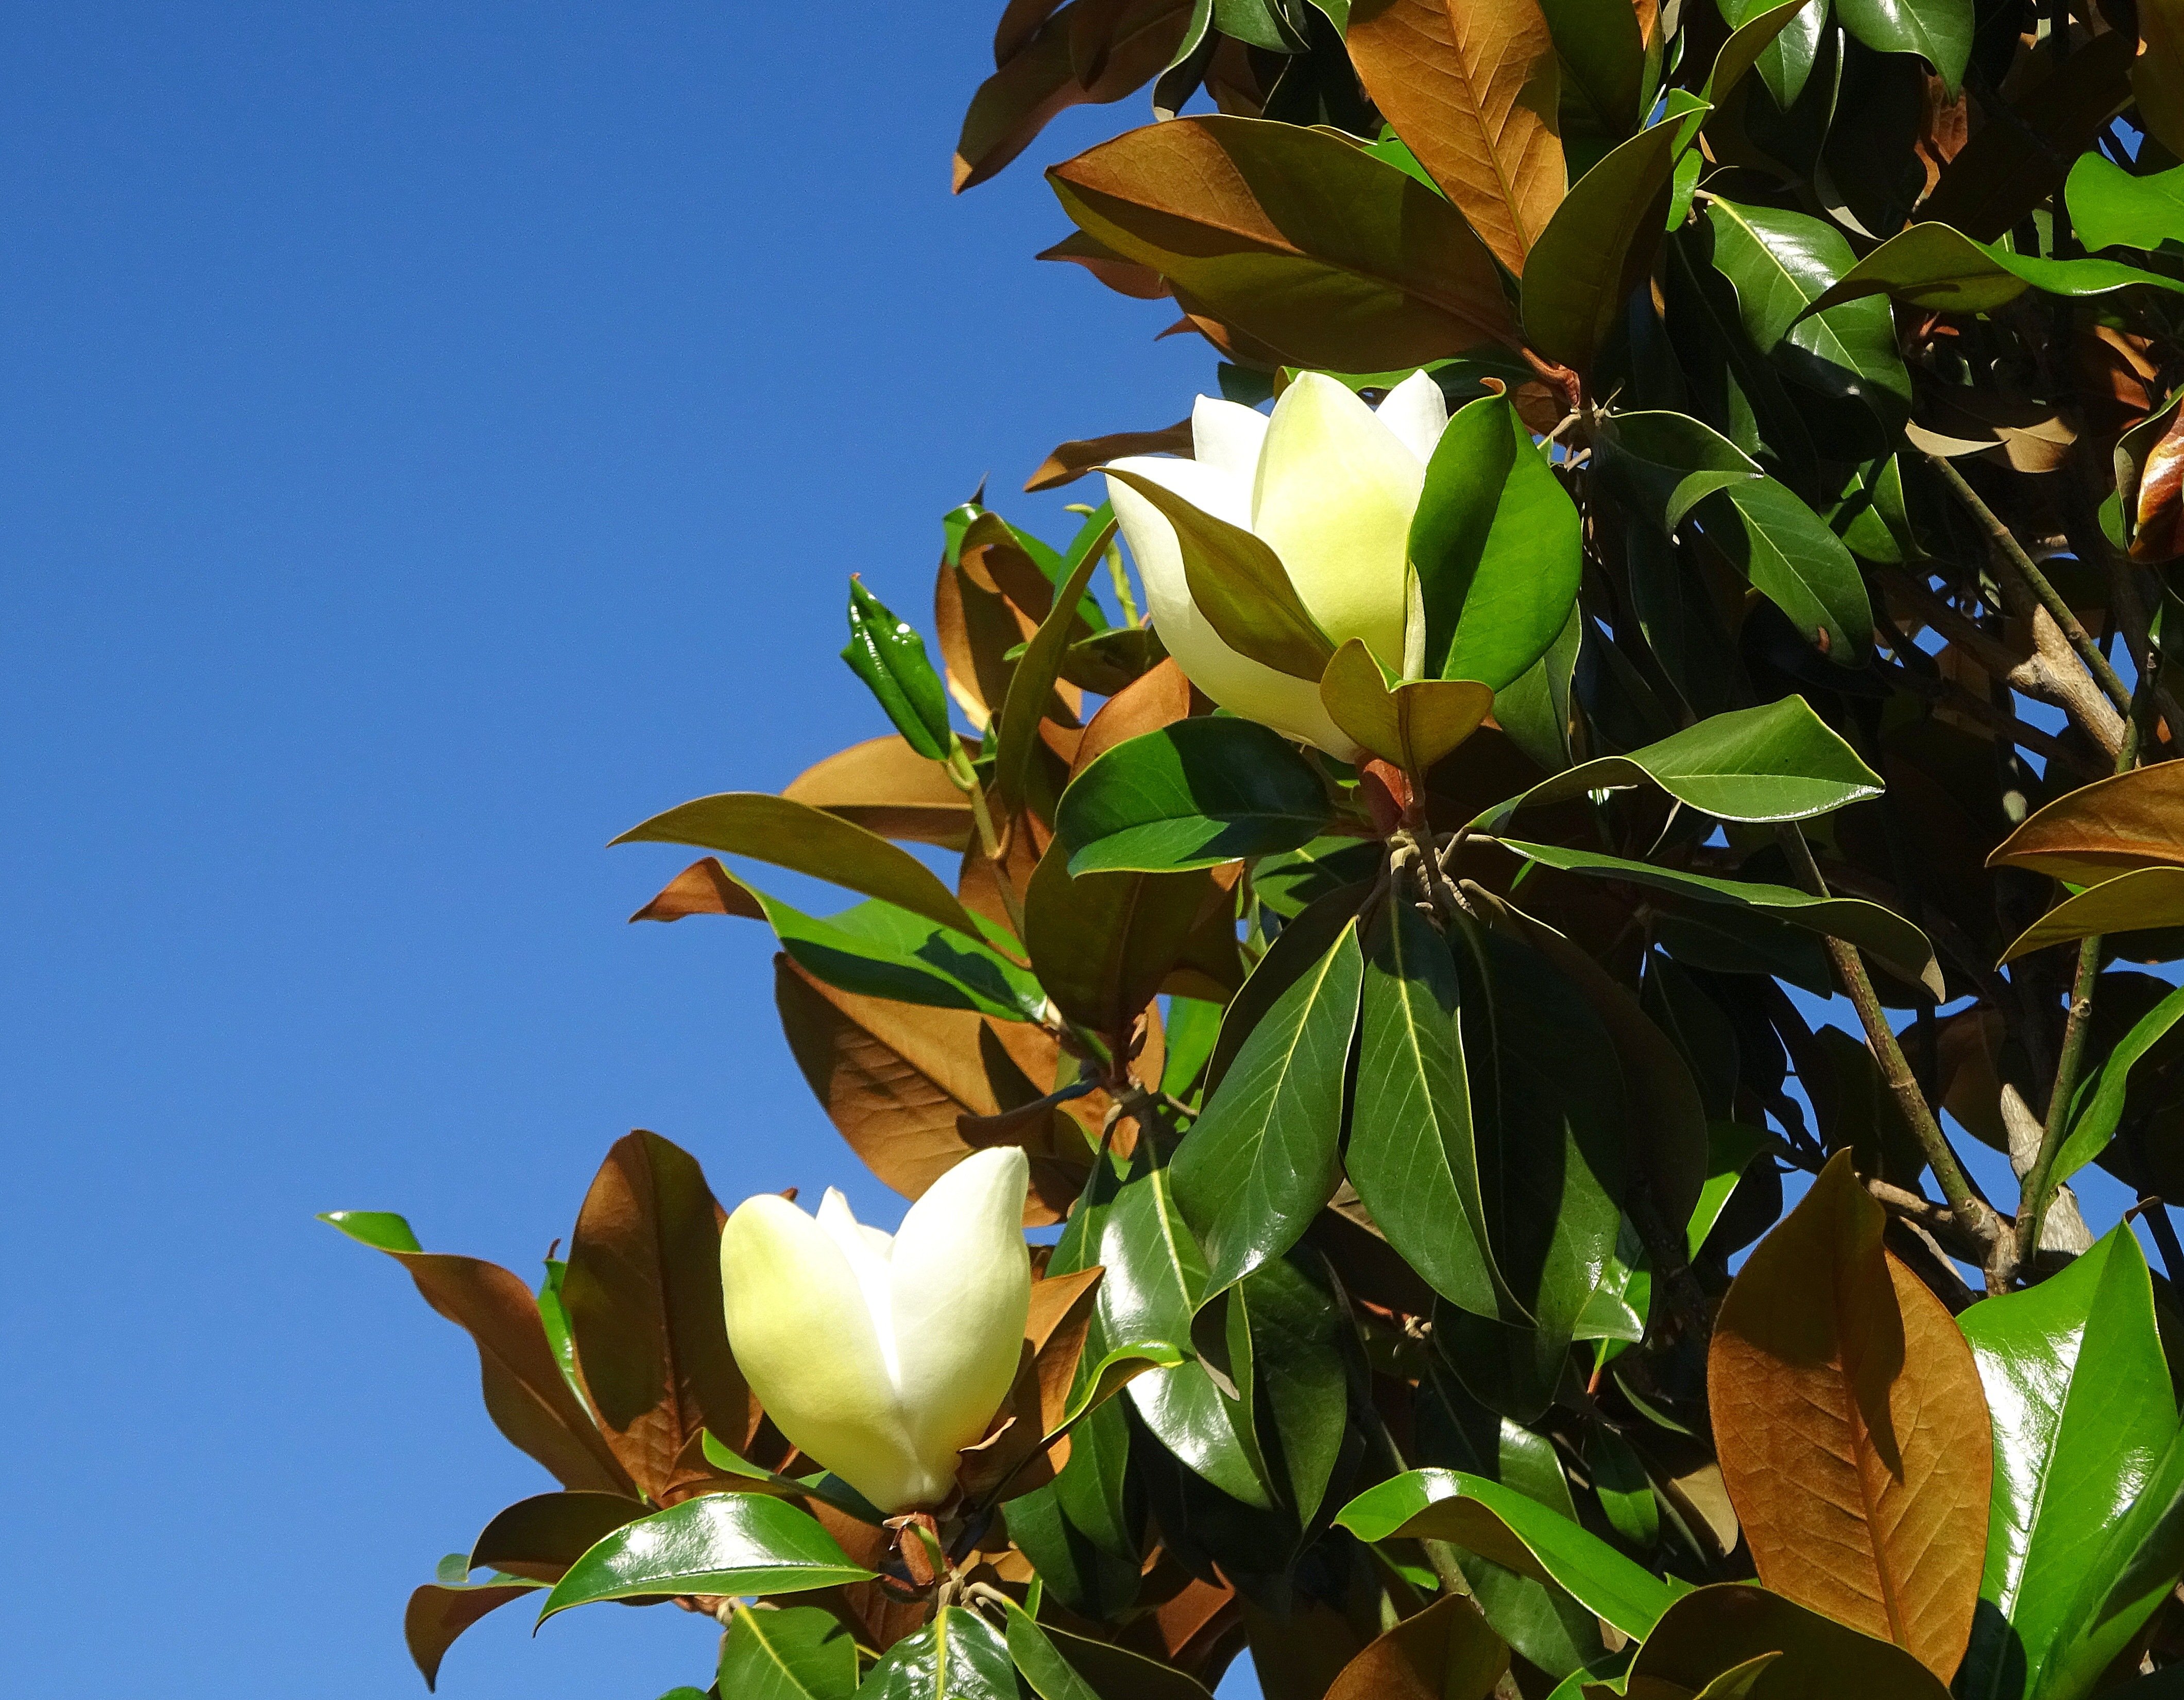 Фото магнолии цветущей дерева в сочи